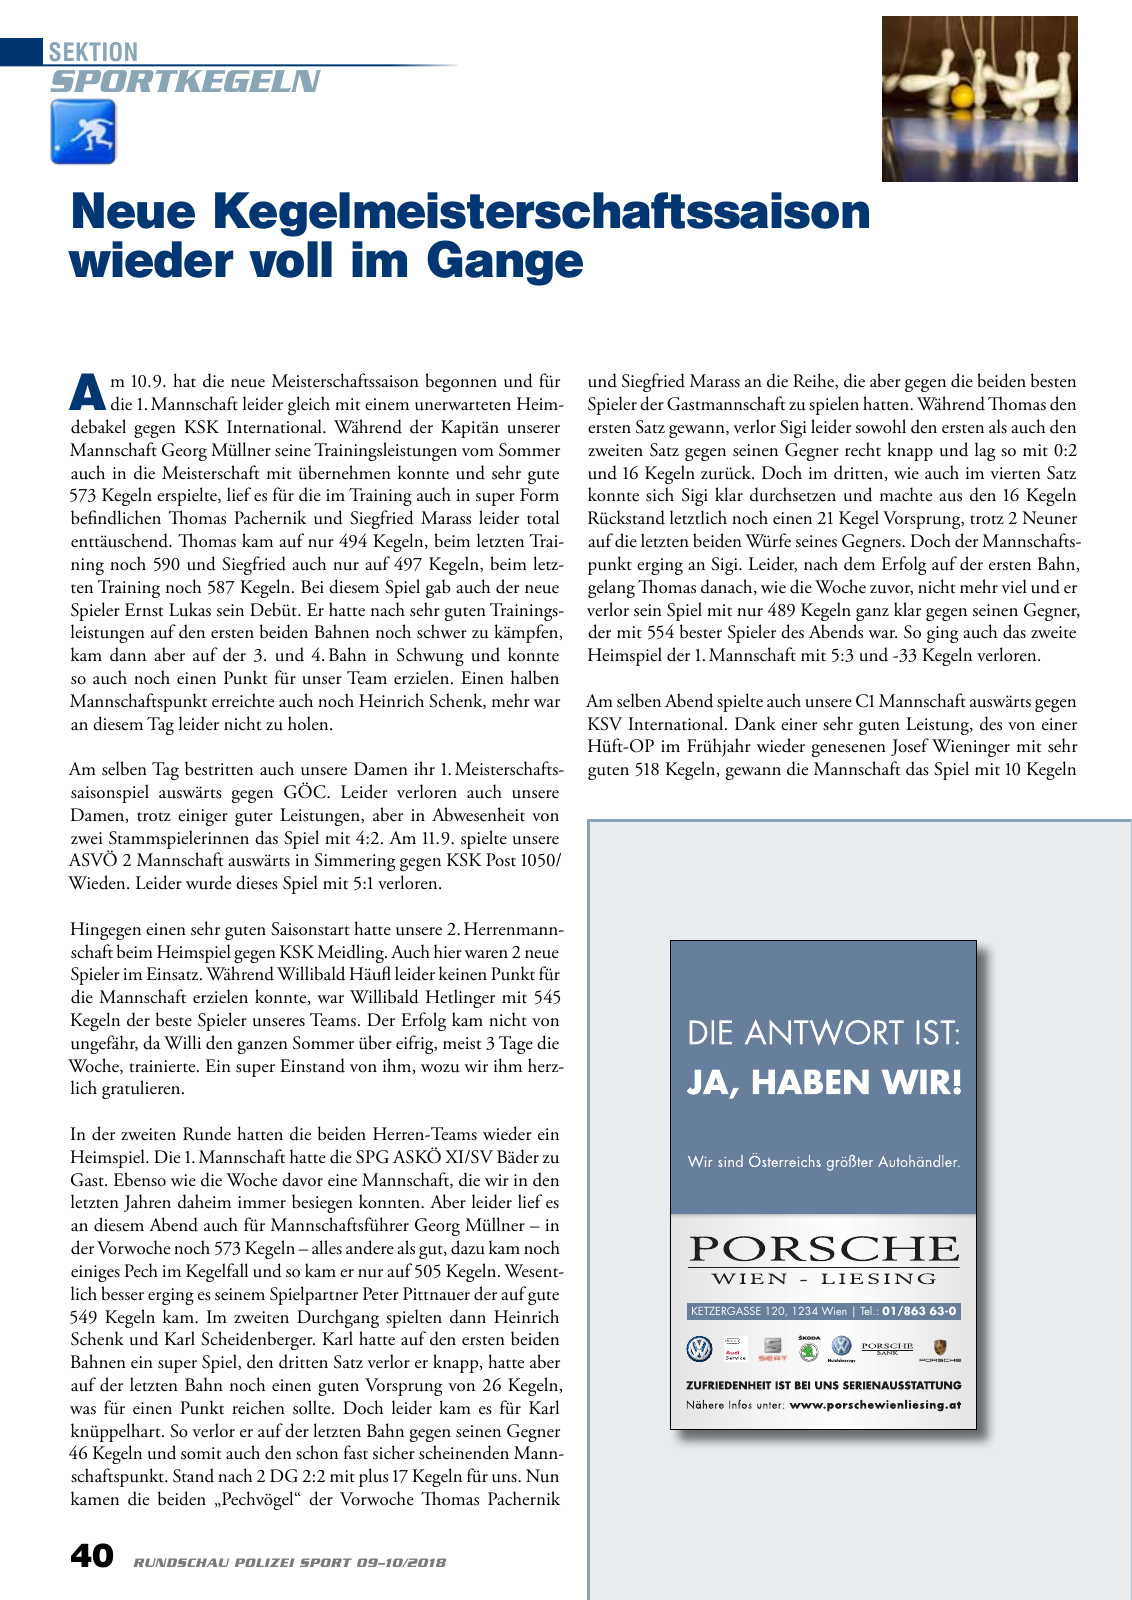 Vorschau Rundschau Polizei Sport 09-10/2018 Seite 40